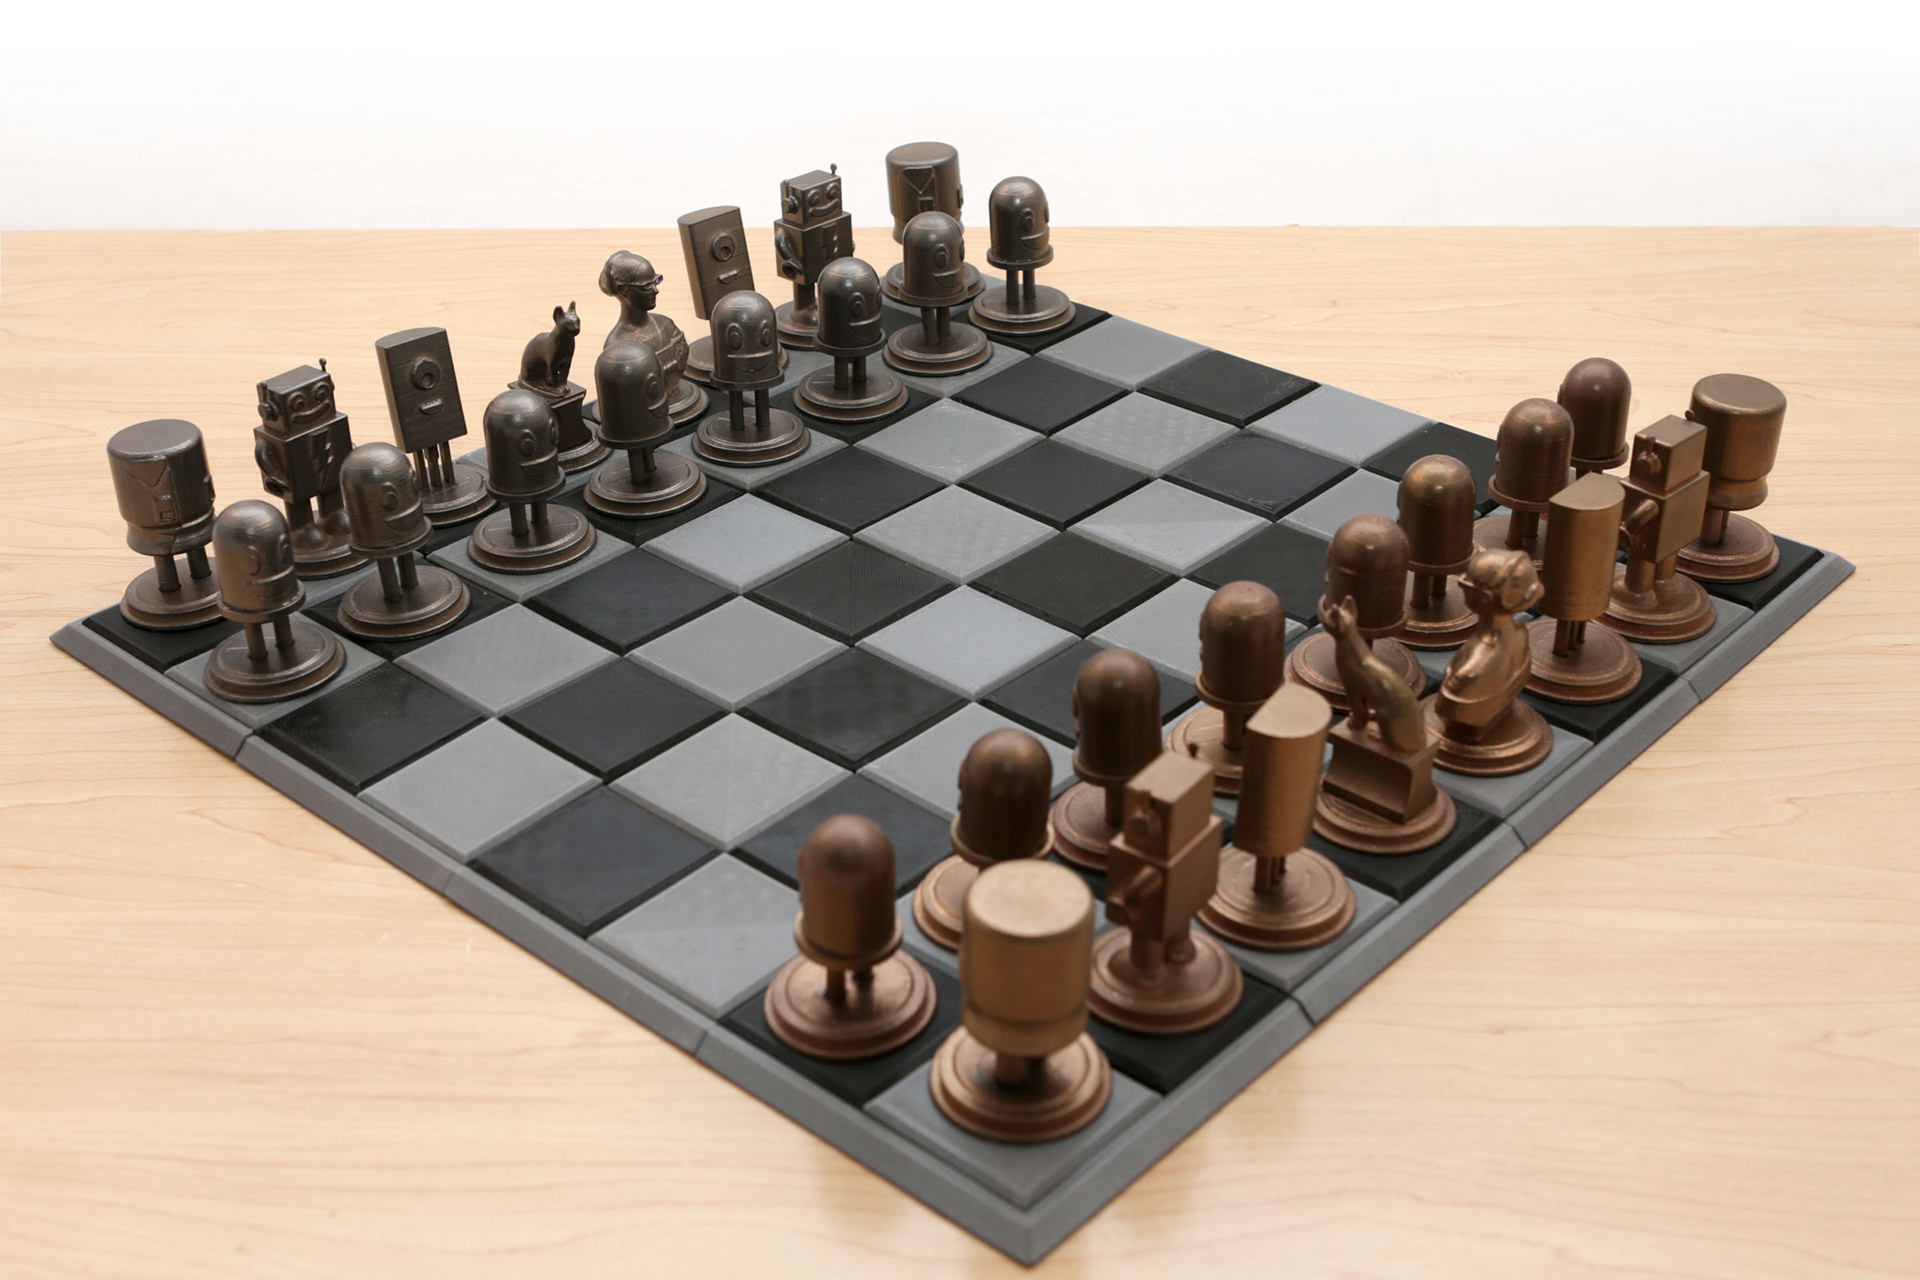 【88%OFF!】 Frcolor 2個チェスボードとチェスの駒樹脂モールドセットチェッカーボードクリスタル型エポキシ3d国際チェスの駒金型チョコレートキャンディモールドdiyのジュエリーメイキングのため casinowarehouse.eu